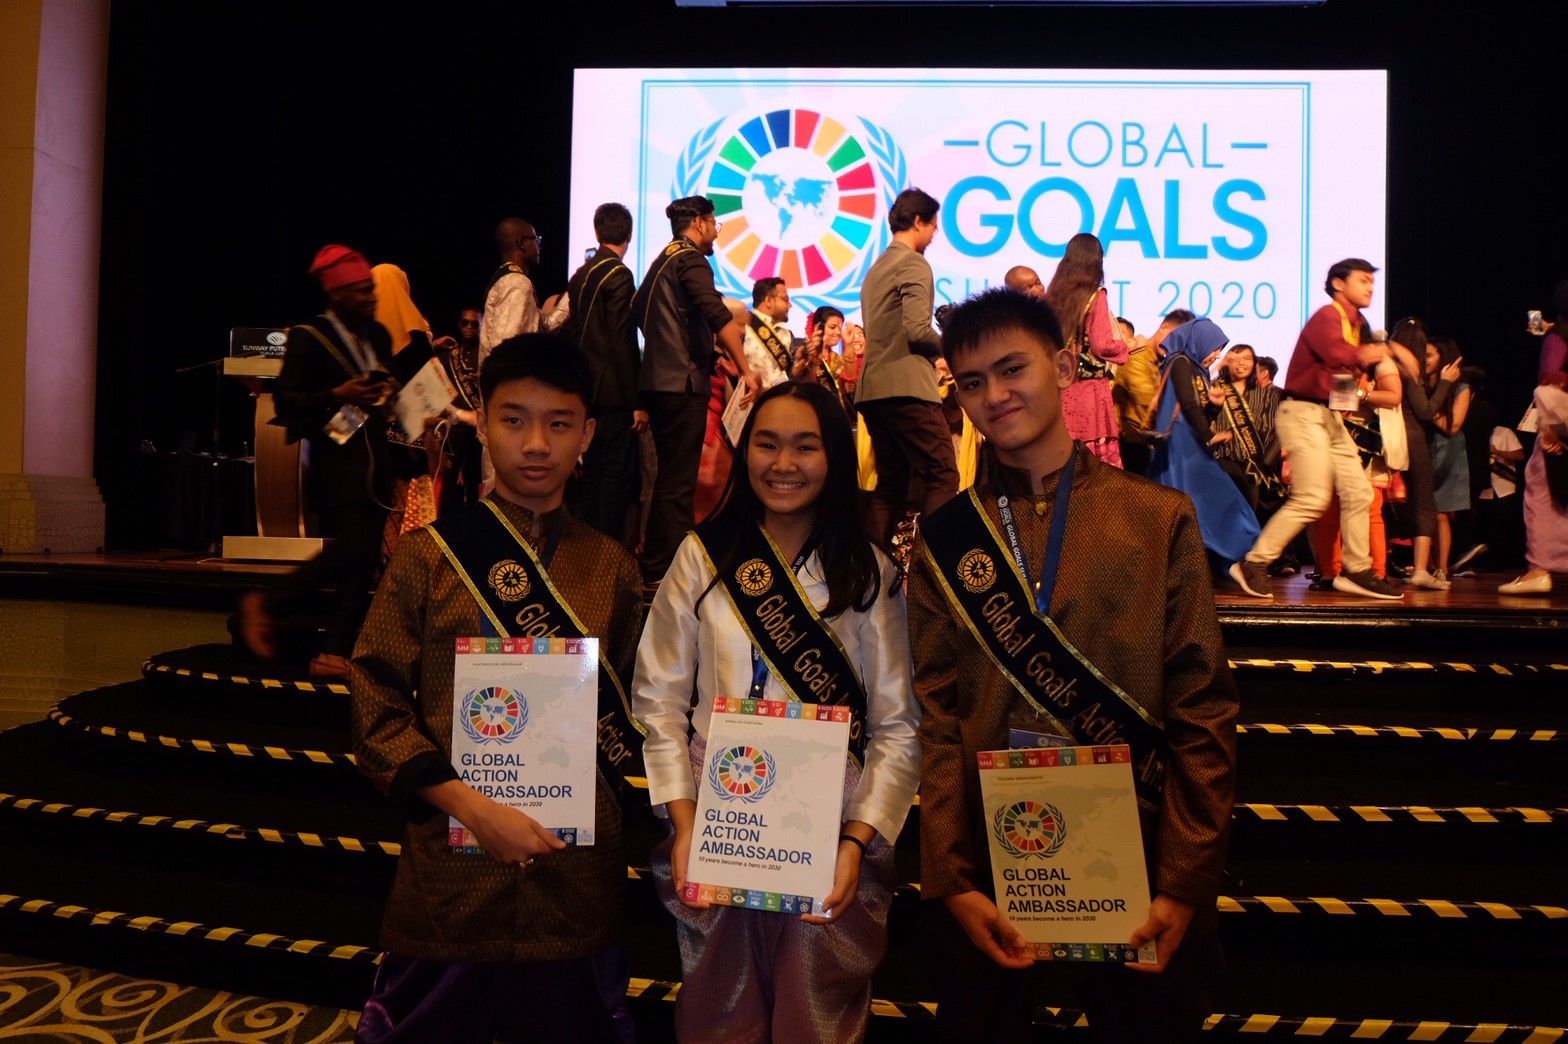 โรงเรียนมัธยมวัดนายโรง เป็นผู้แทนเยาวชนไทยเข้าร่วมการประชุม Global Goals Summit 2020 ระหว่างวันที่ 23-25 มกราคม 2563 ณ กรุงกัวลาลัมเปอร์ ประเทศมาเลเซีย